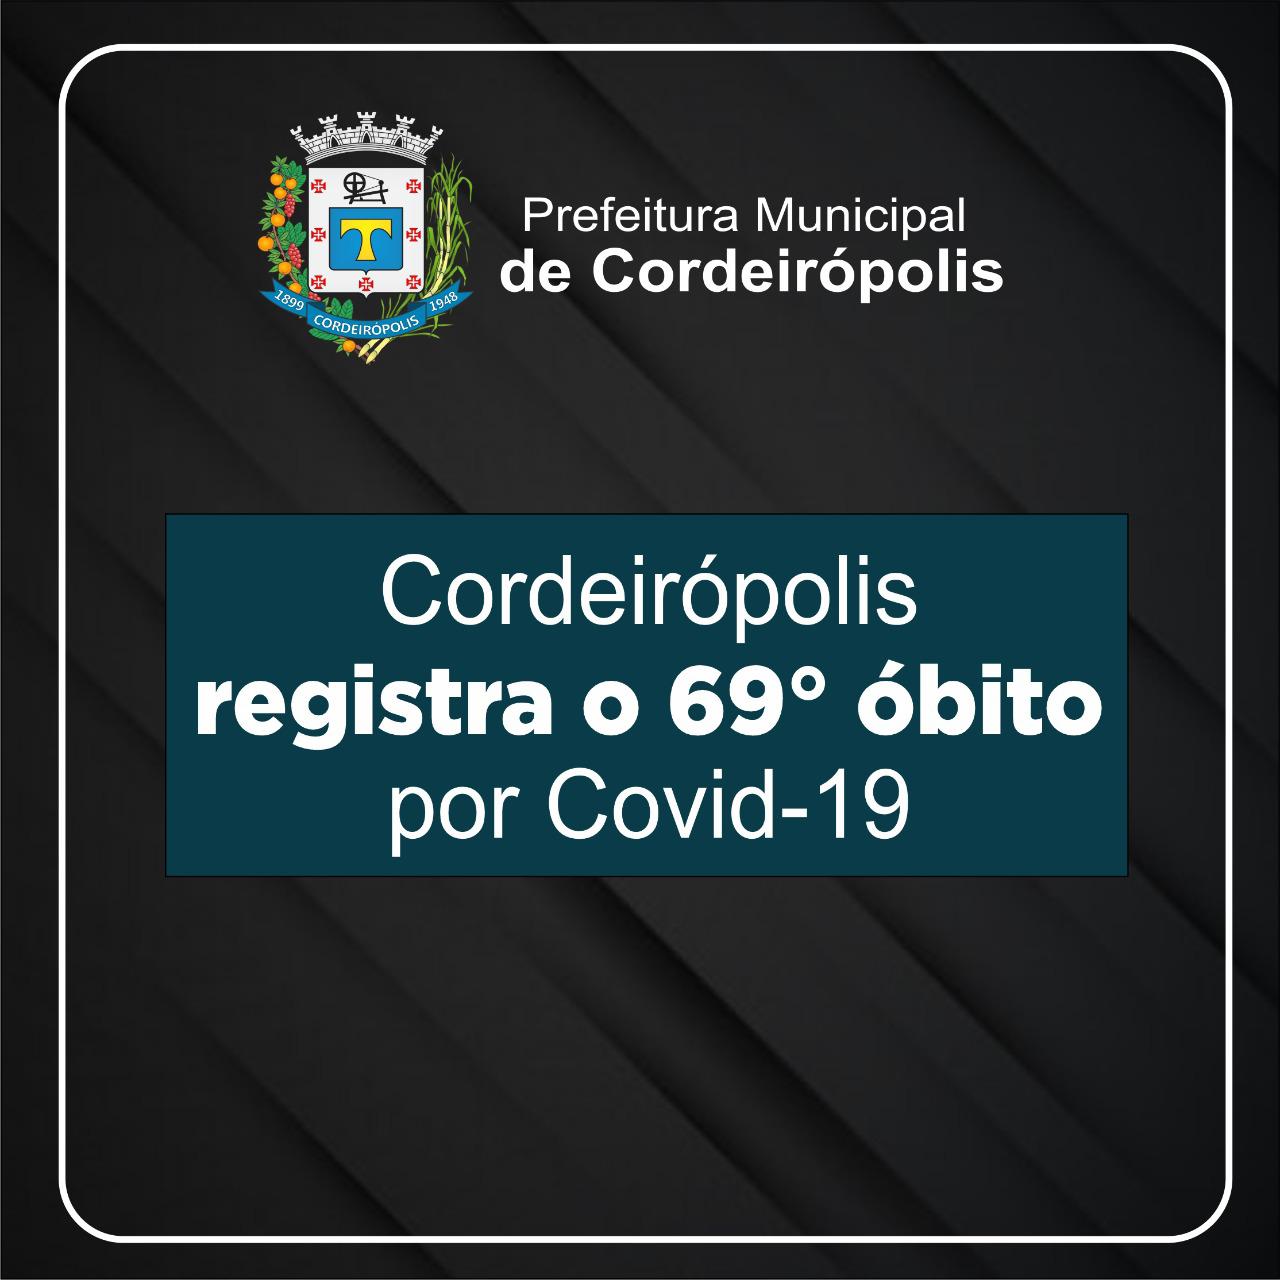 Cordeirópolis registra o 69º óbito decorrente de Covid